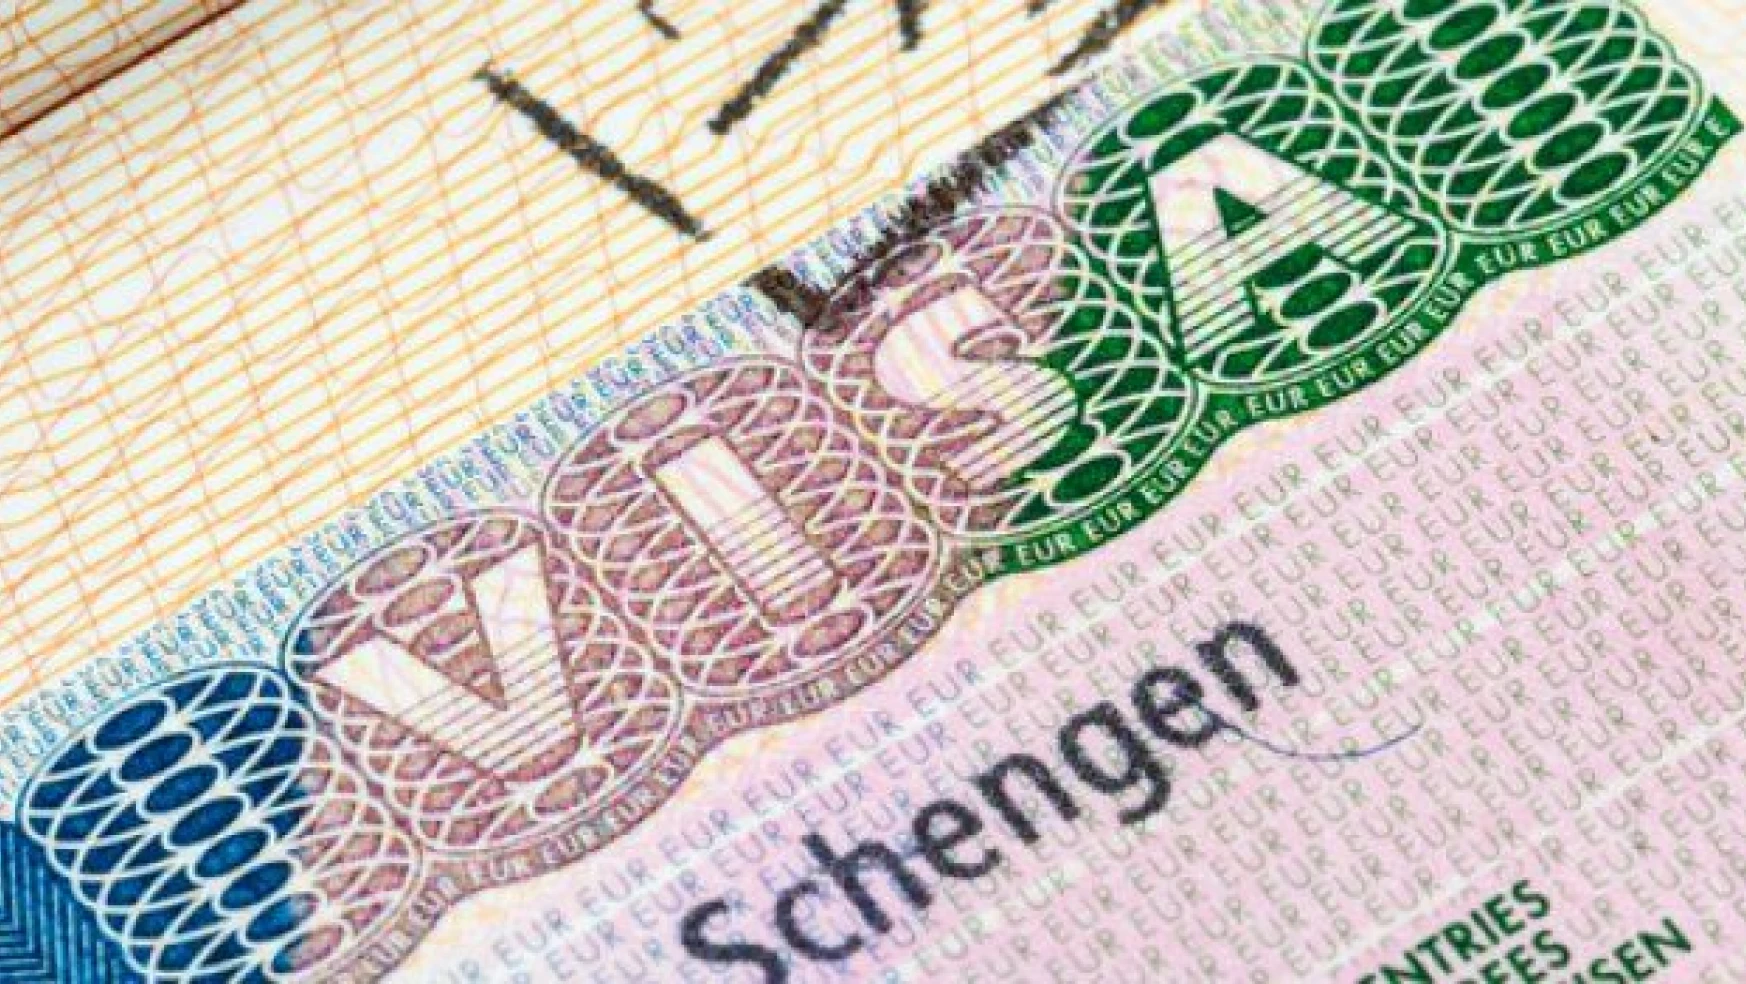 'Schengen tehlikede'